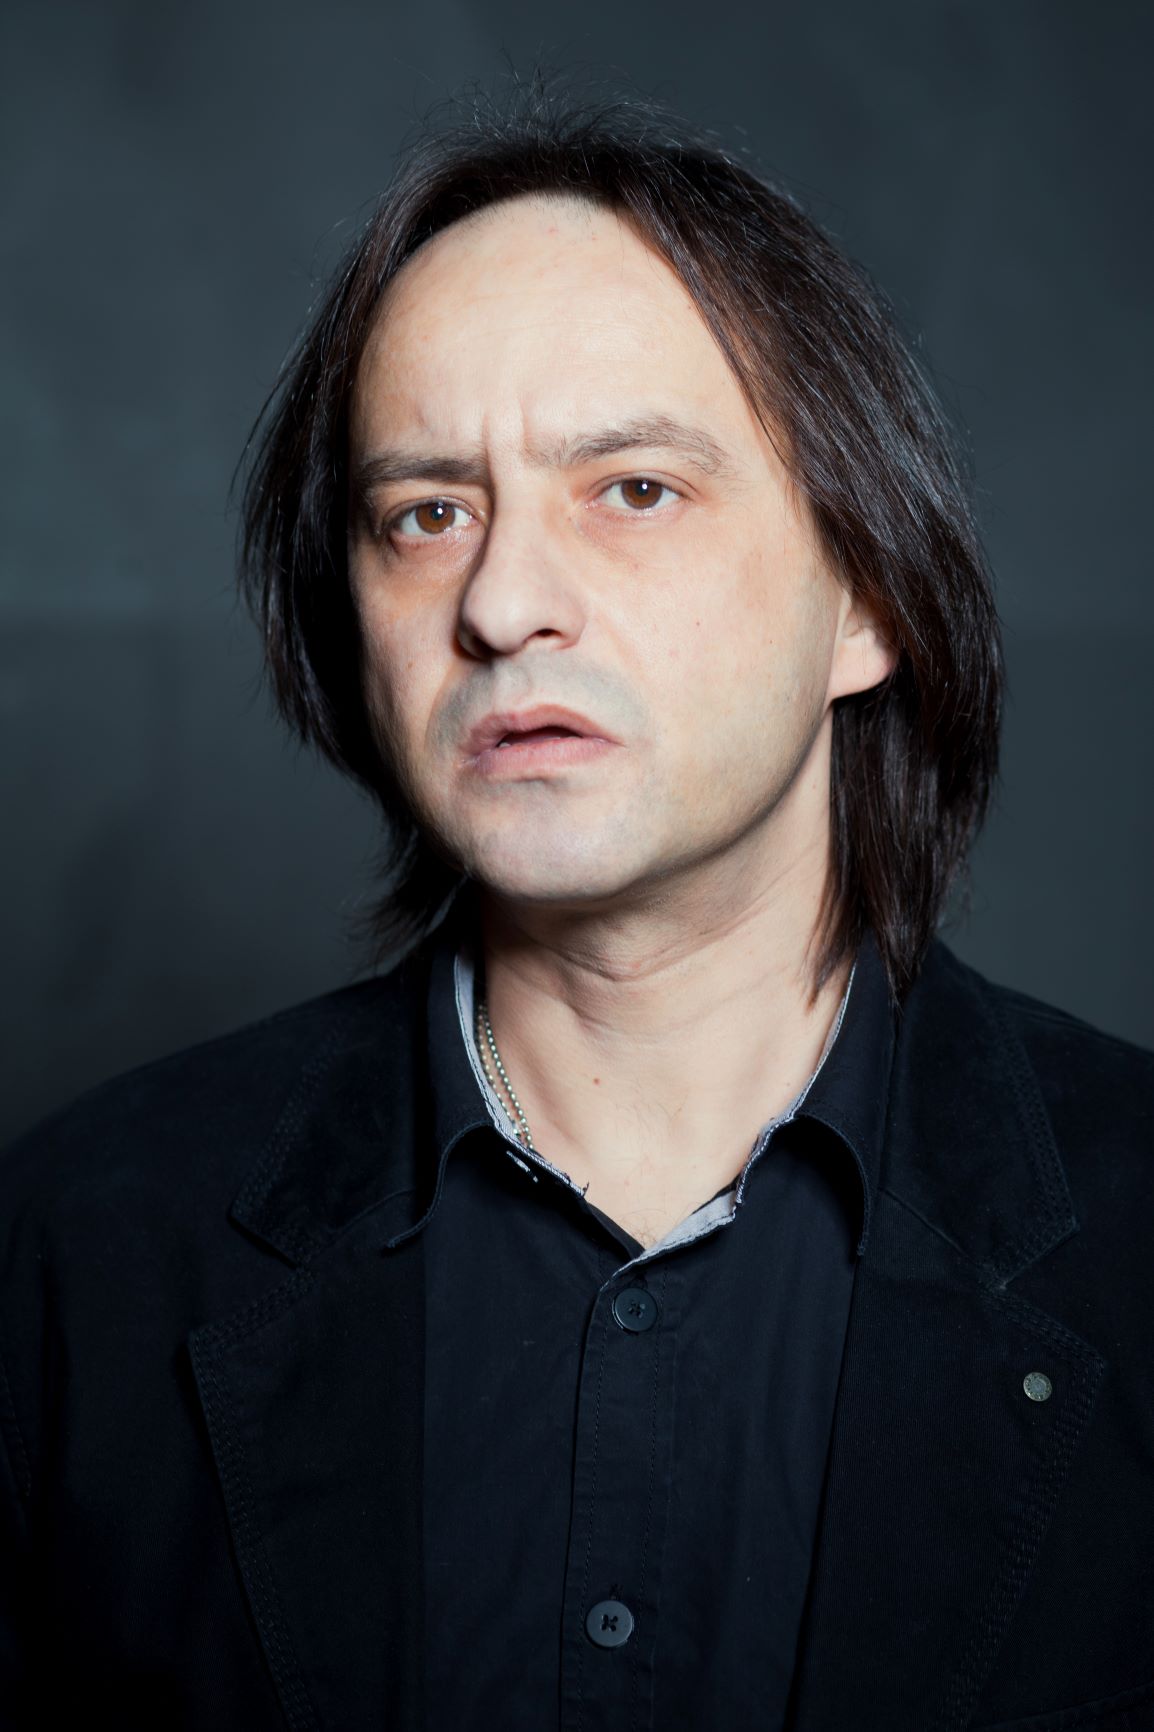 Marius Stanescu